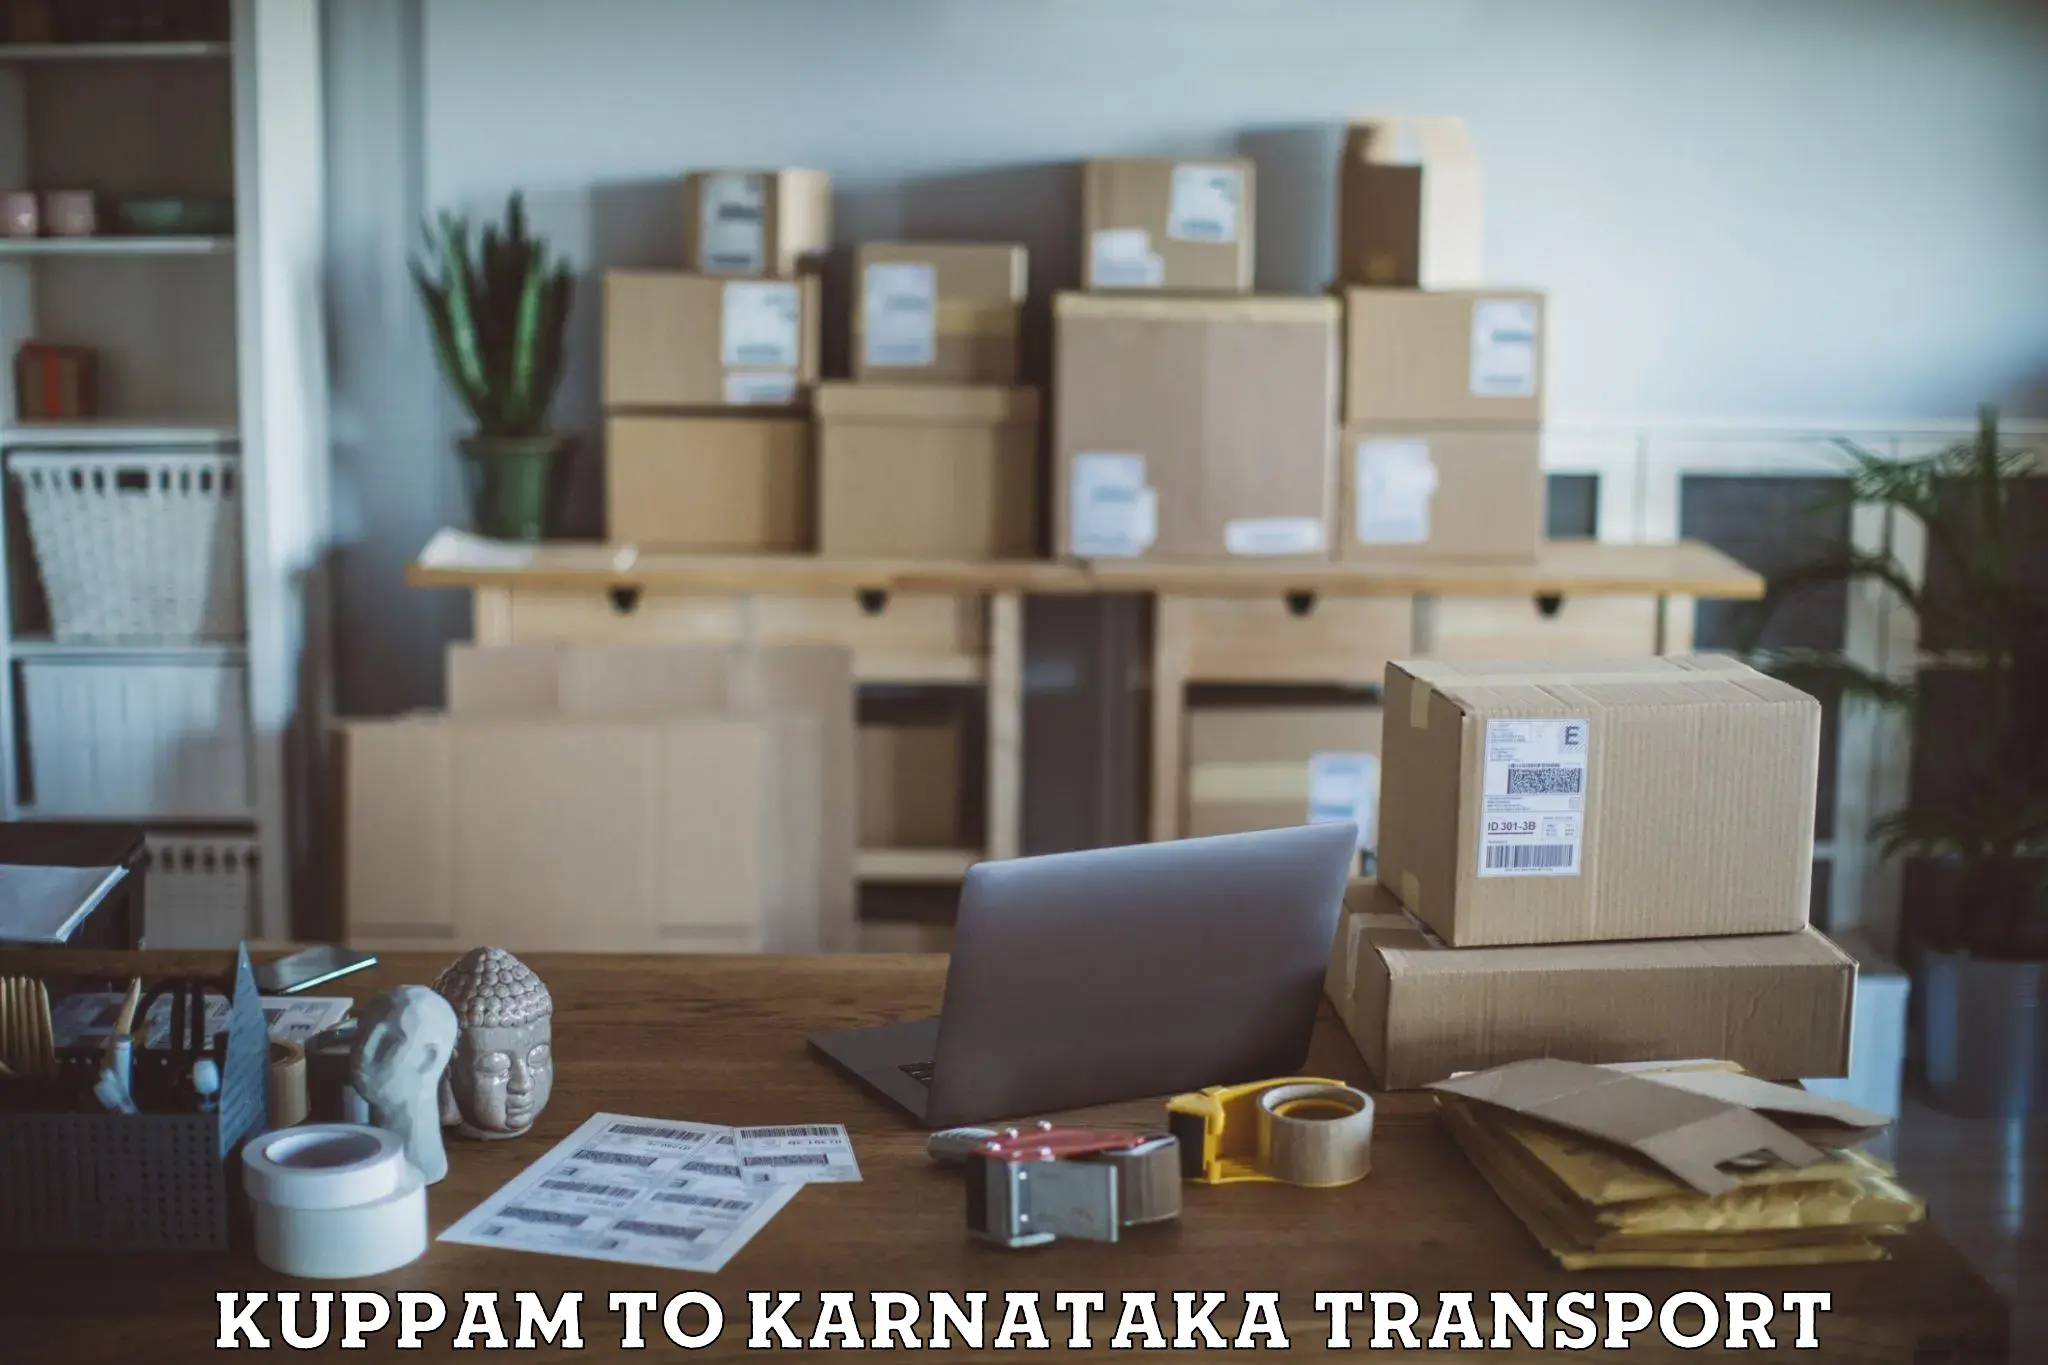 Shipping partner Kuppam to Yadgiri